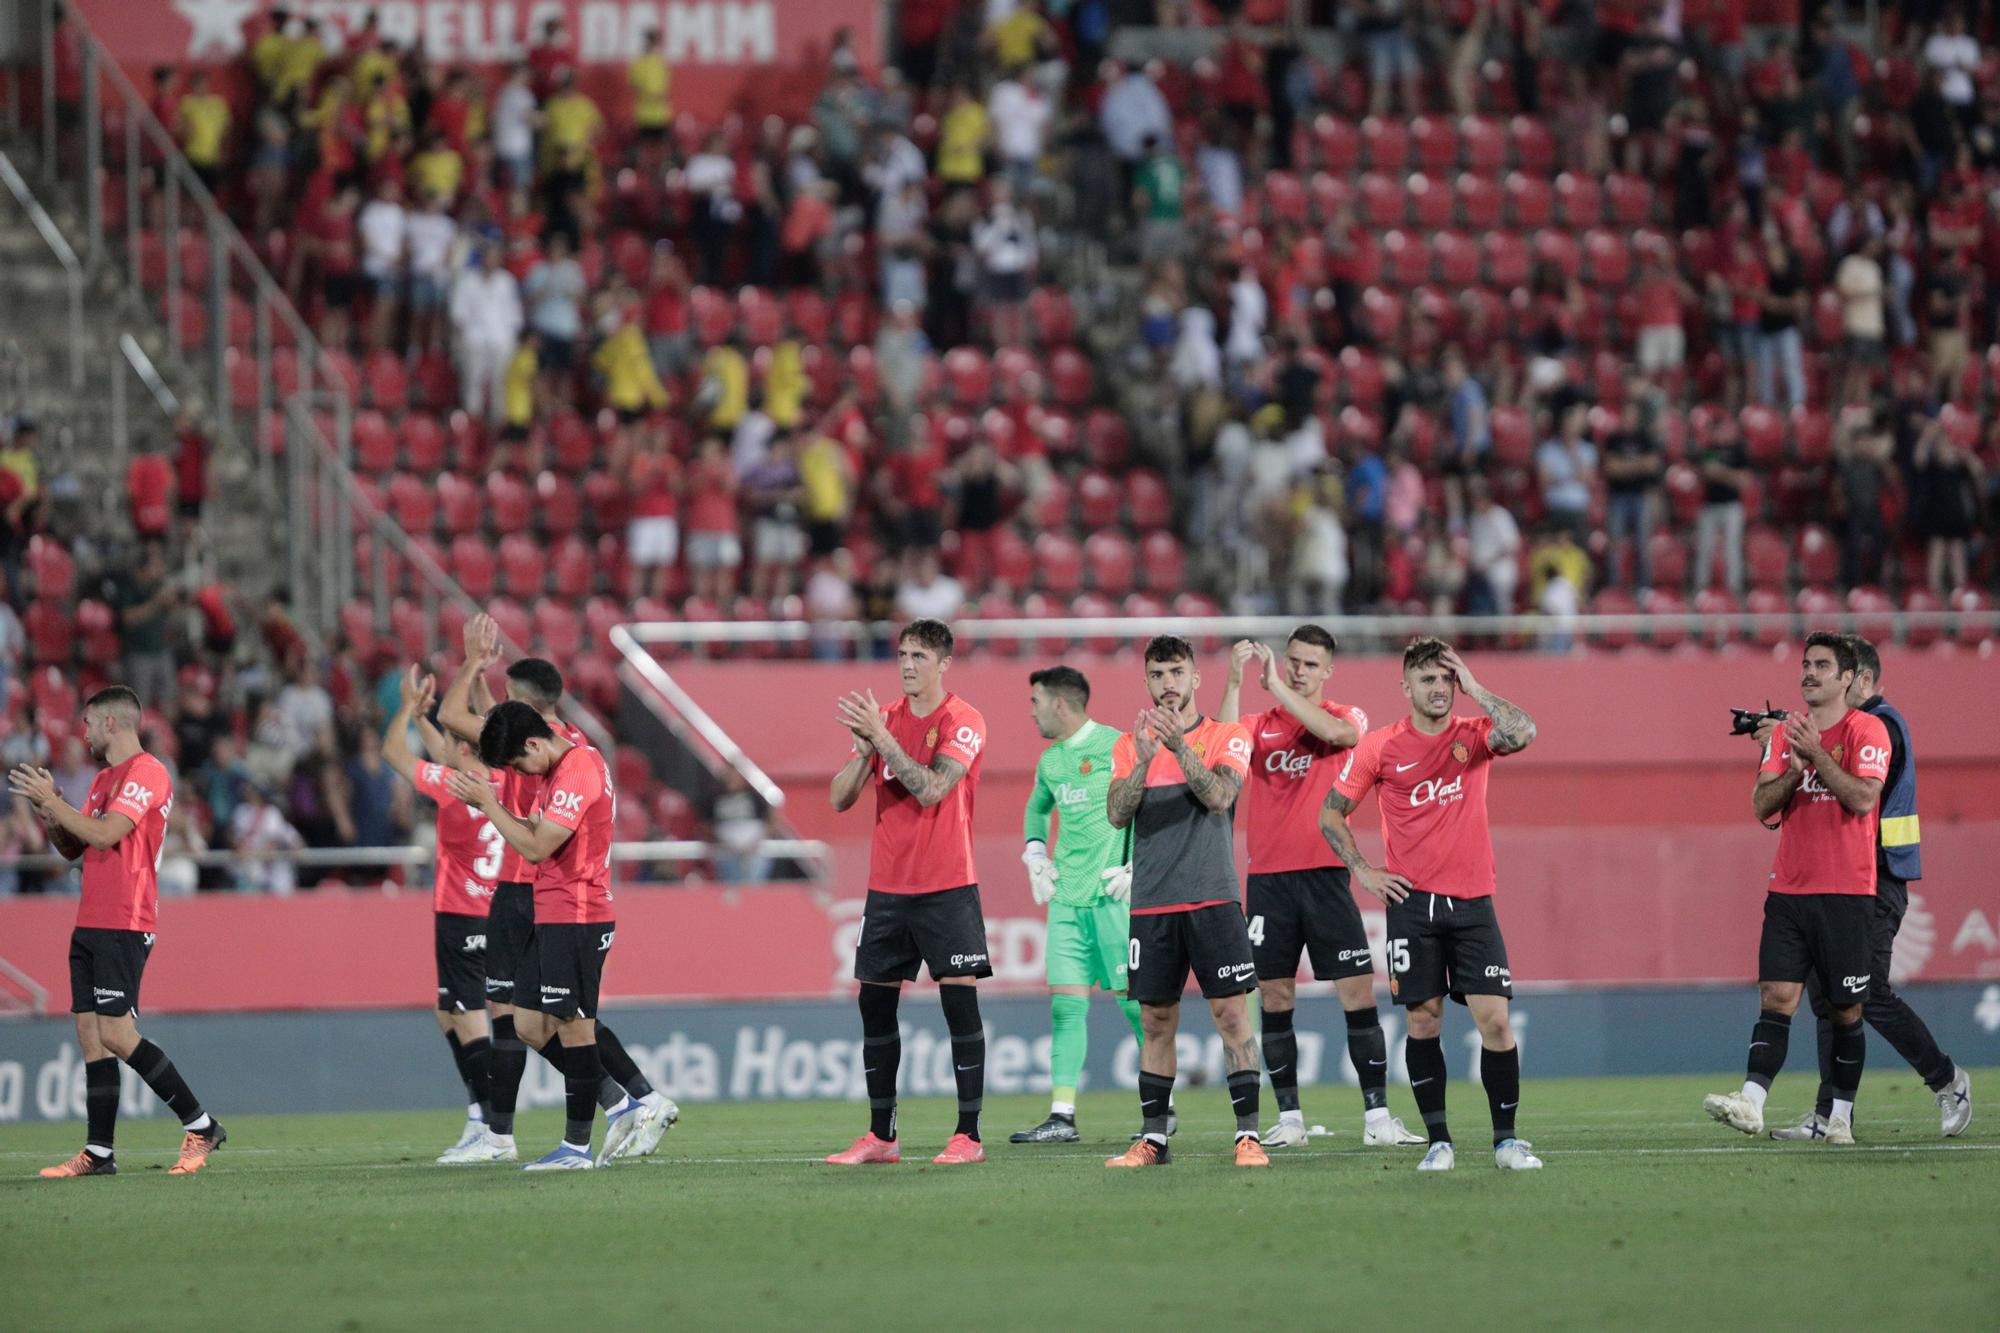 Real Mallorca-Rayo Vallecano: las mejores fotos del partido